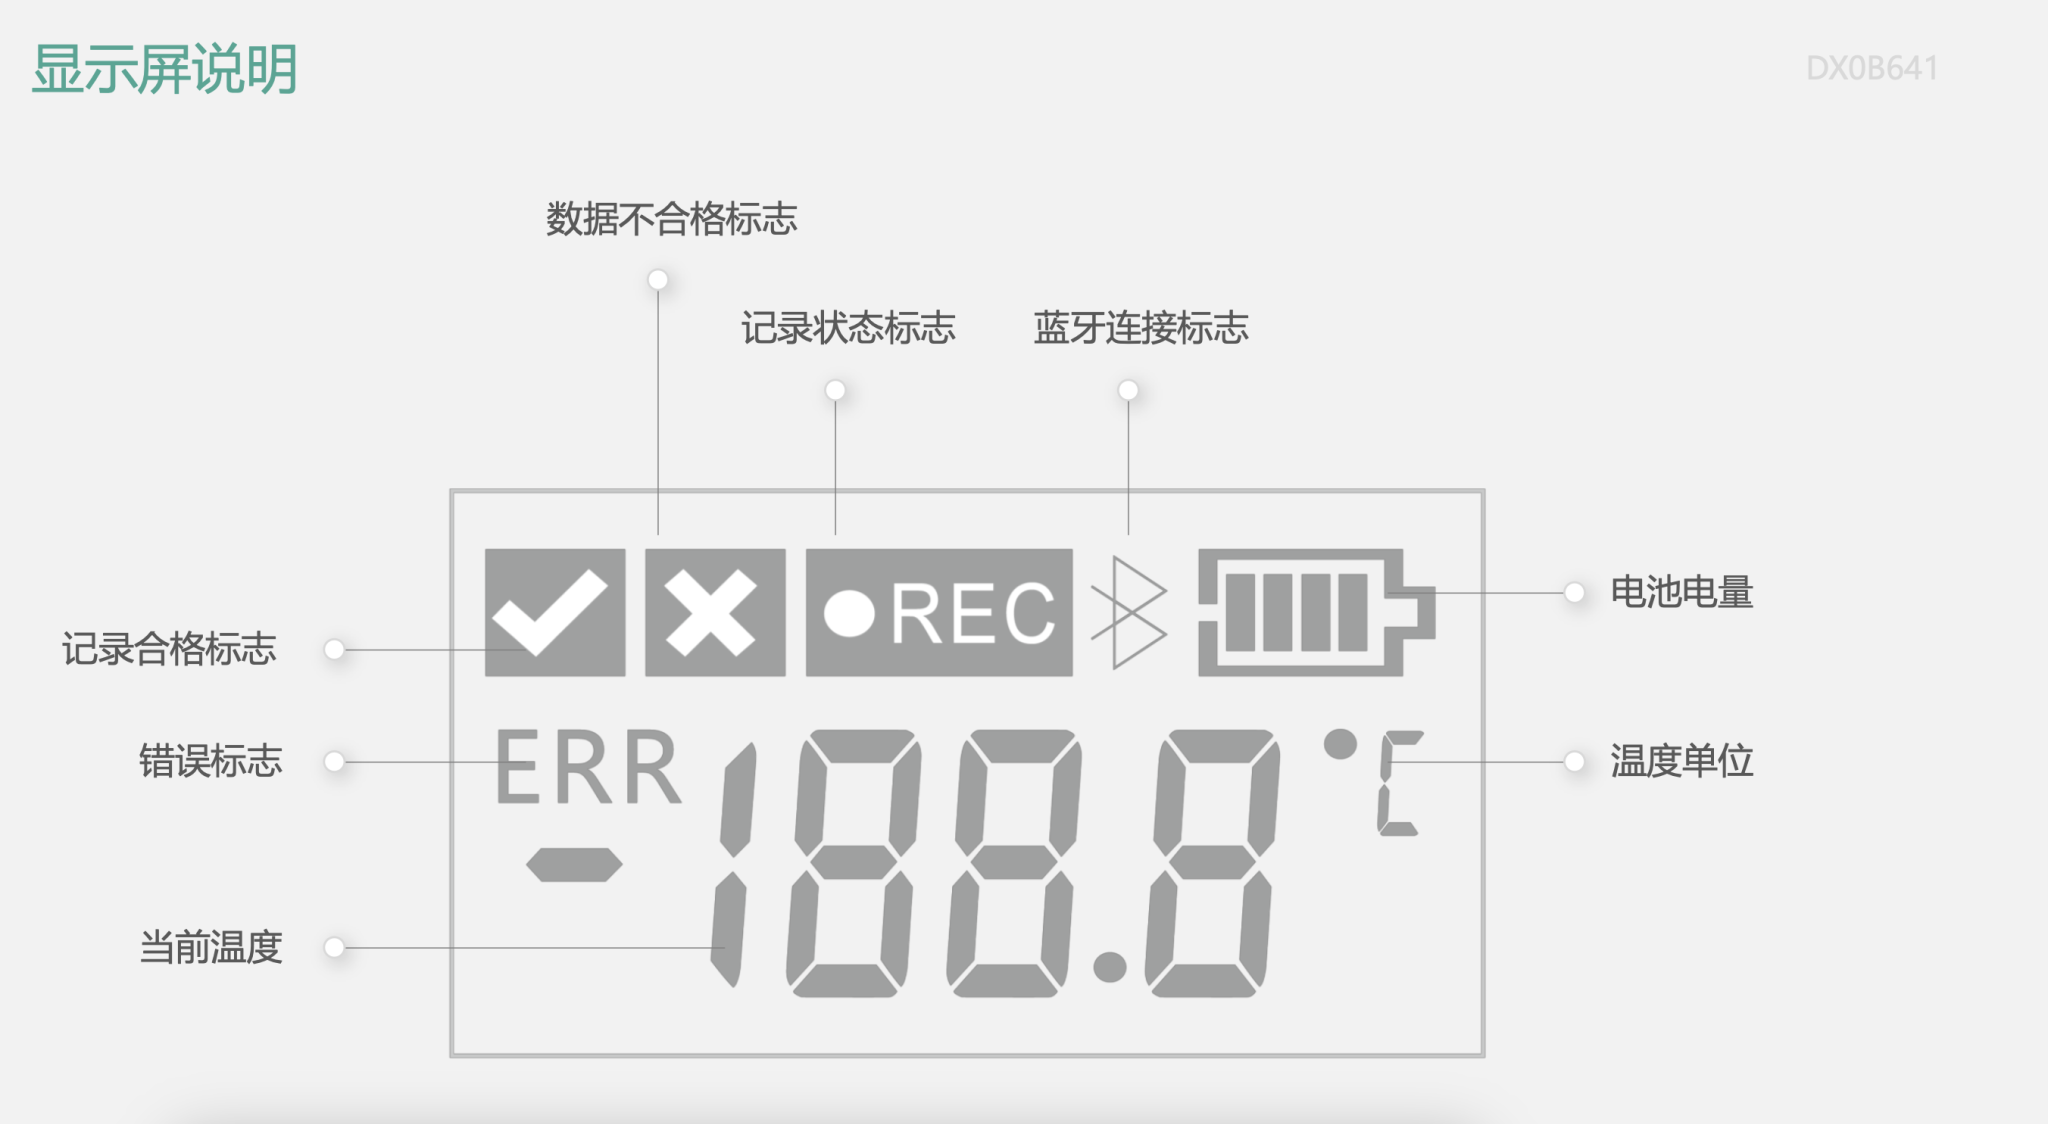 蓝牙温度记录仪DX0B641